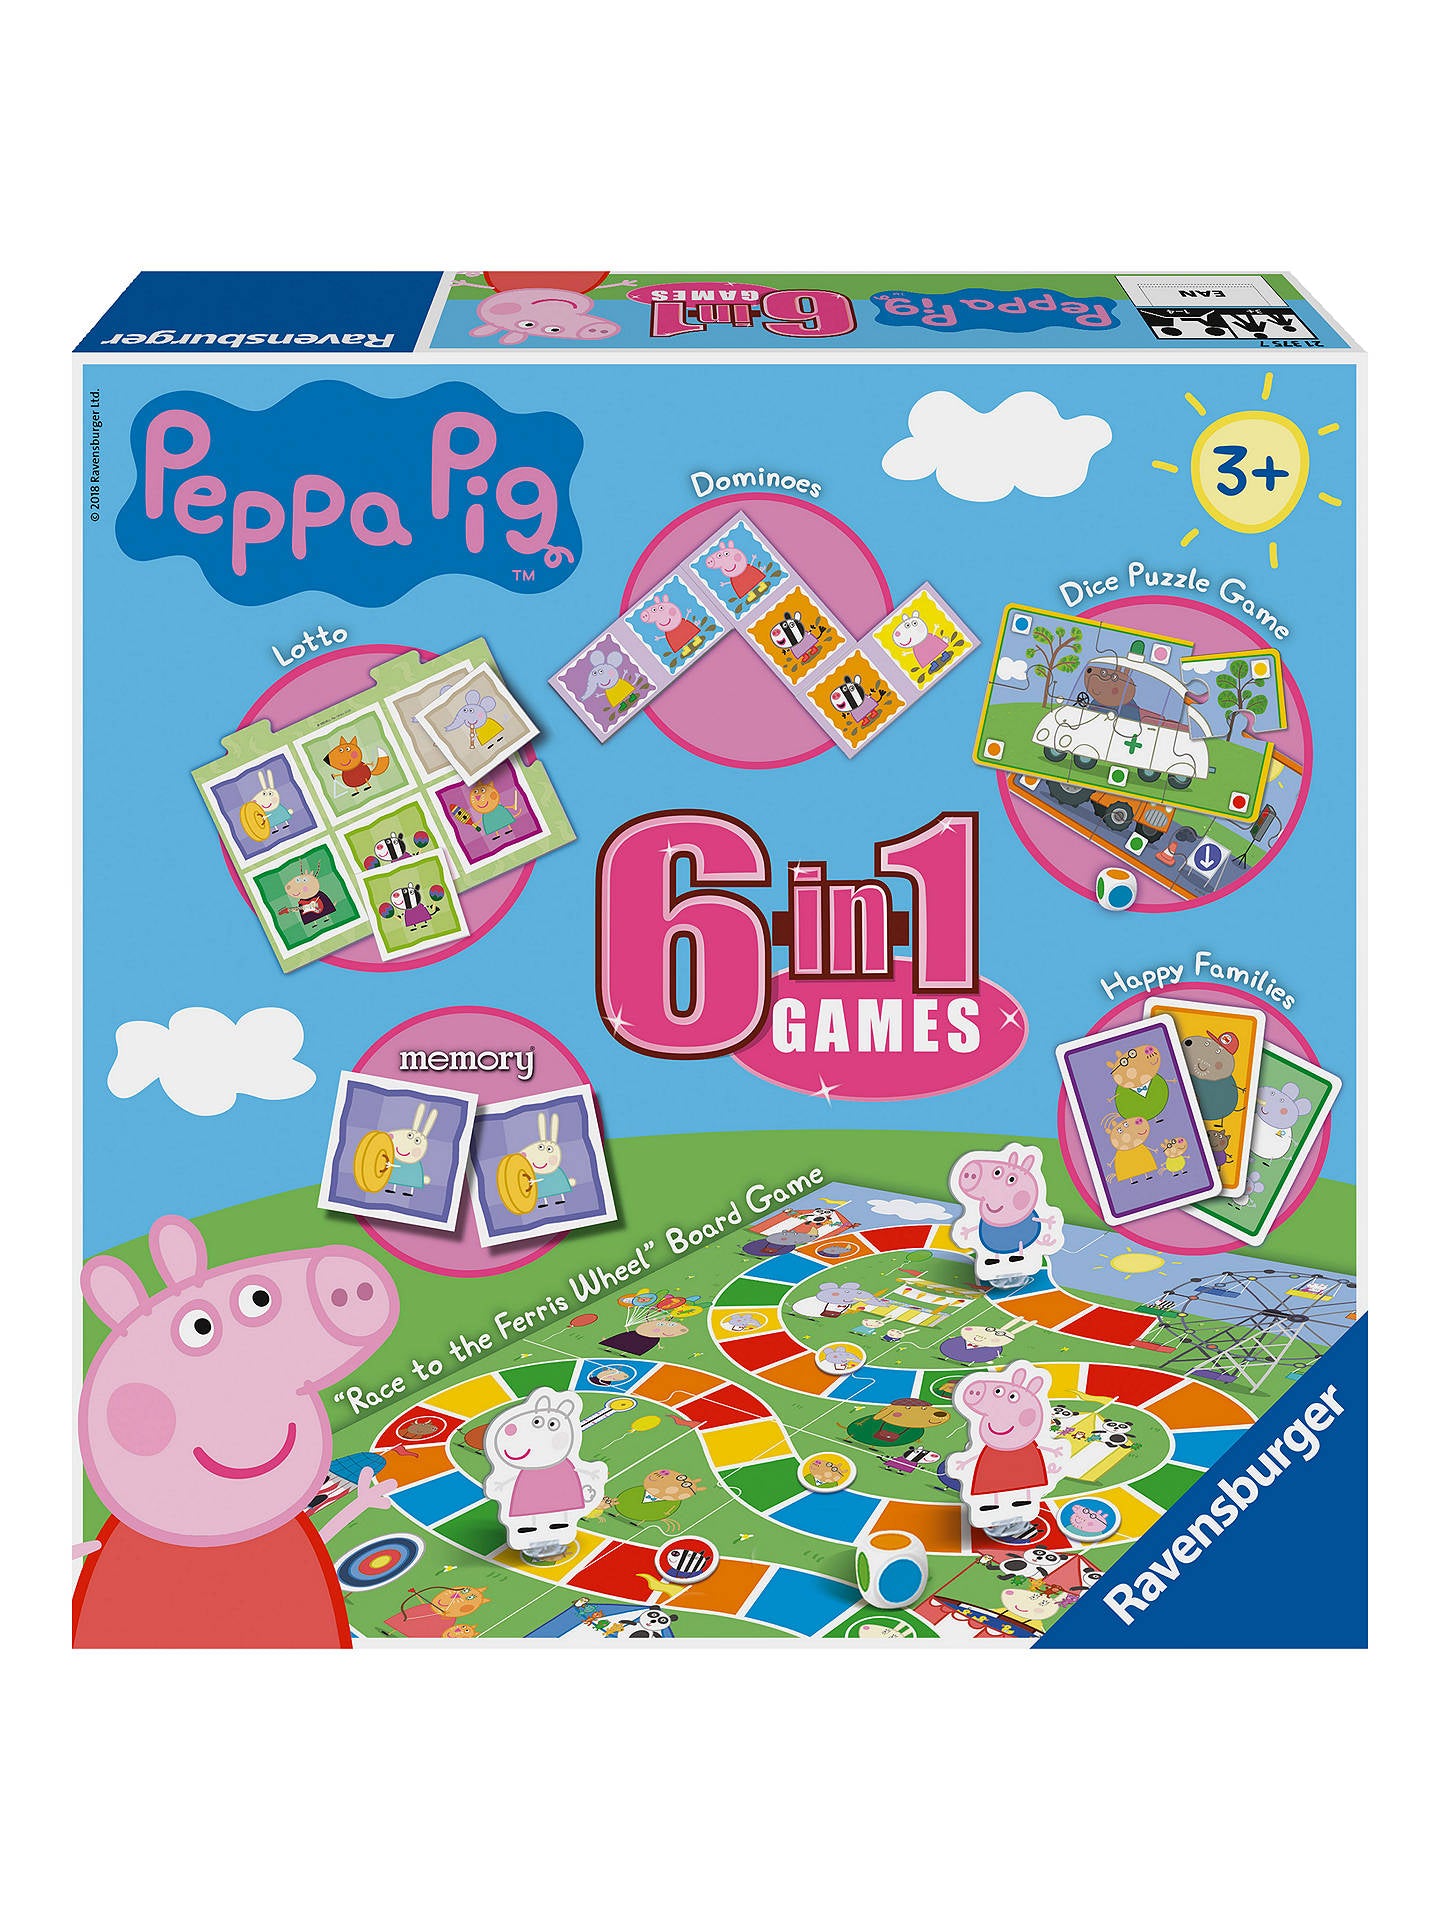 Peppa Pig 6 in 1 Games